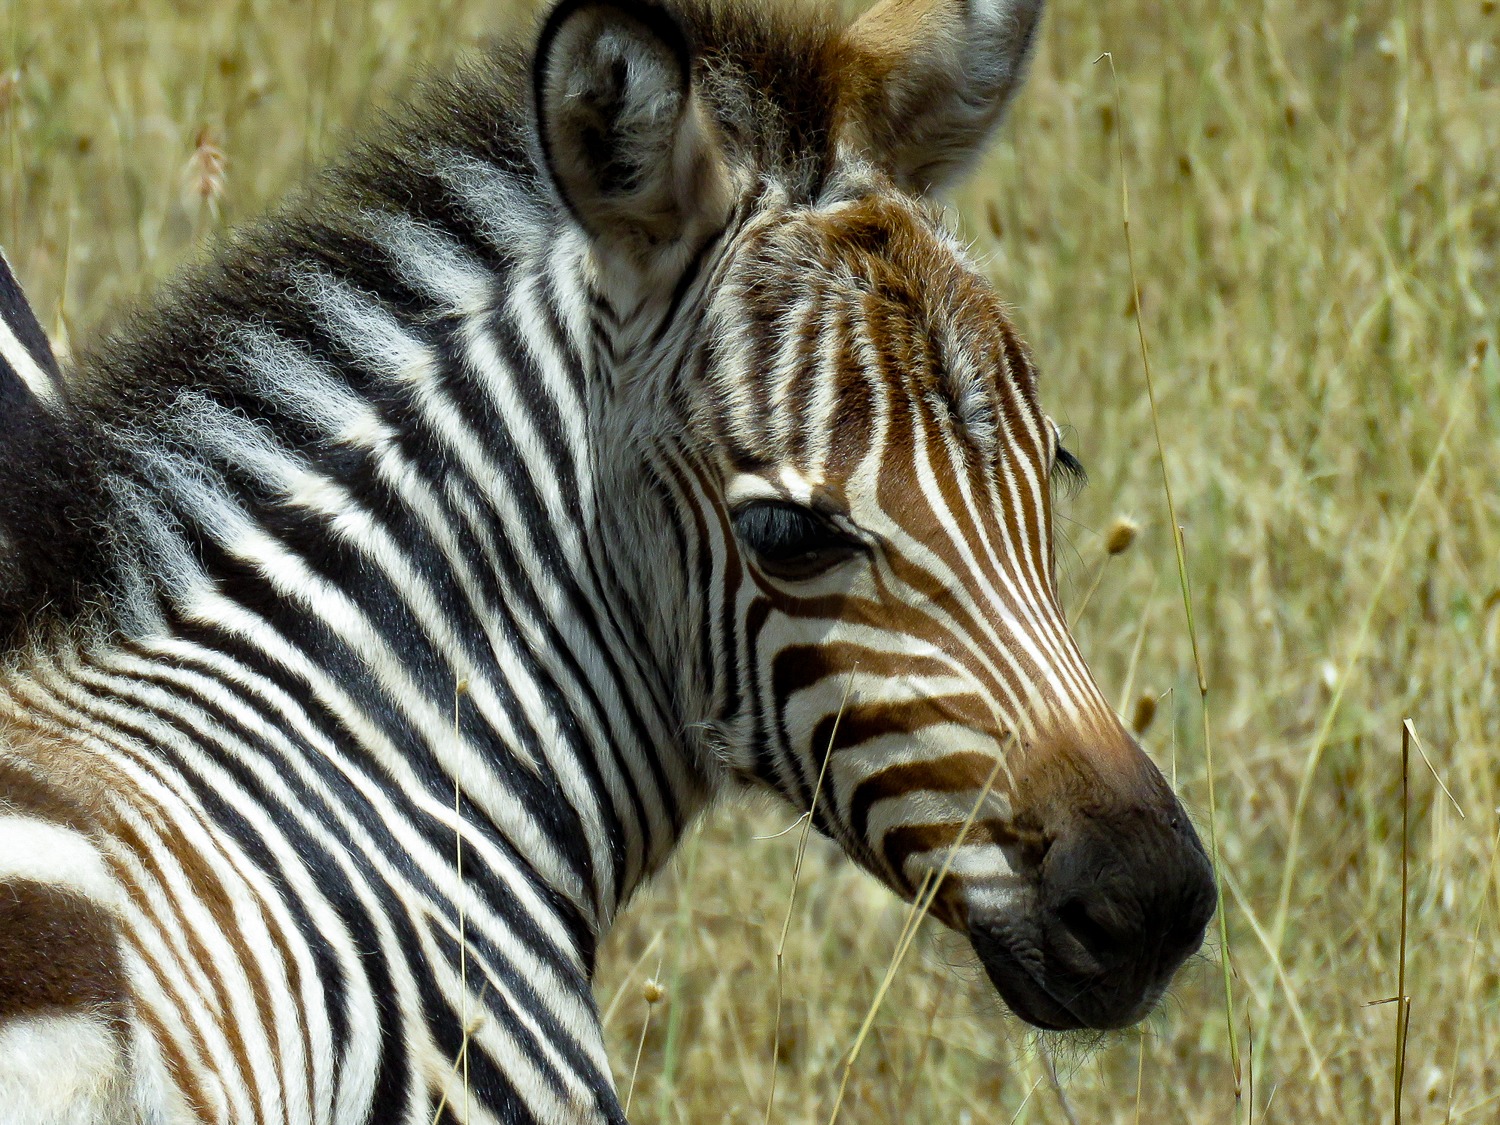 Zebra Fawn